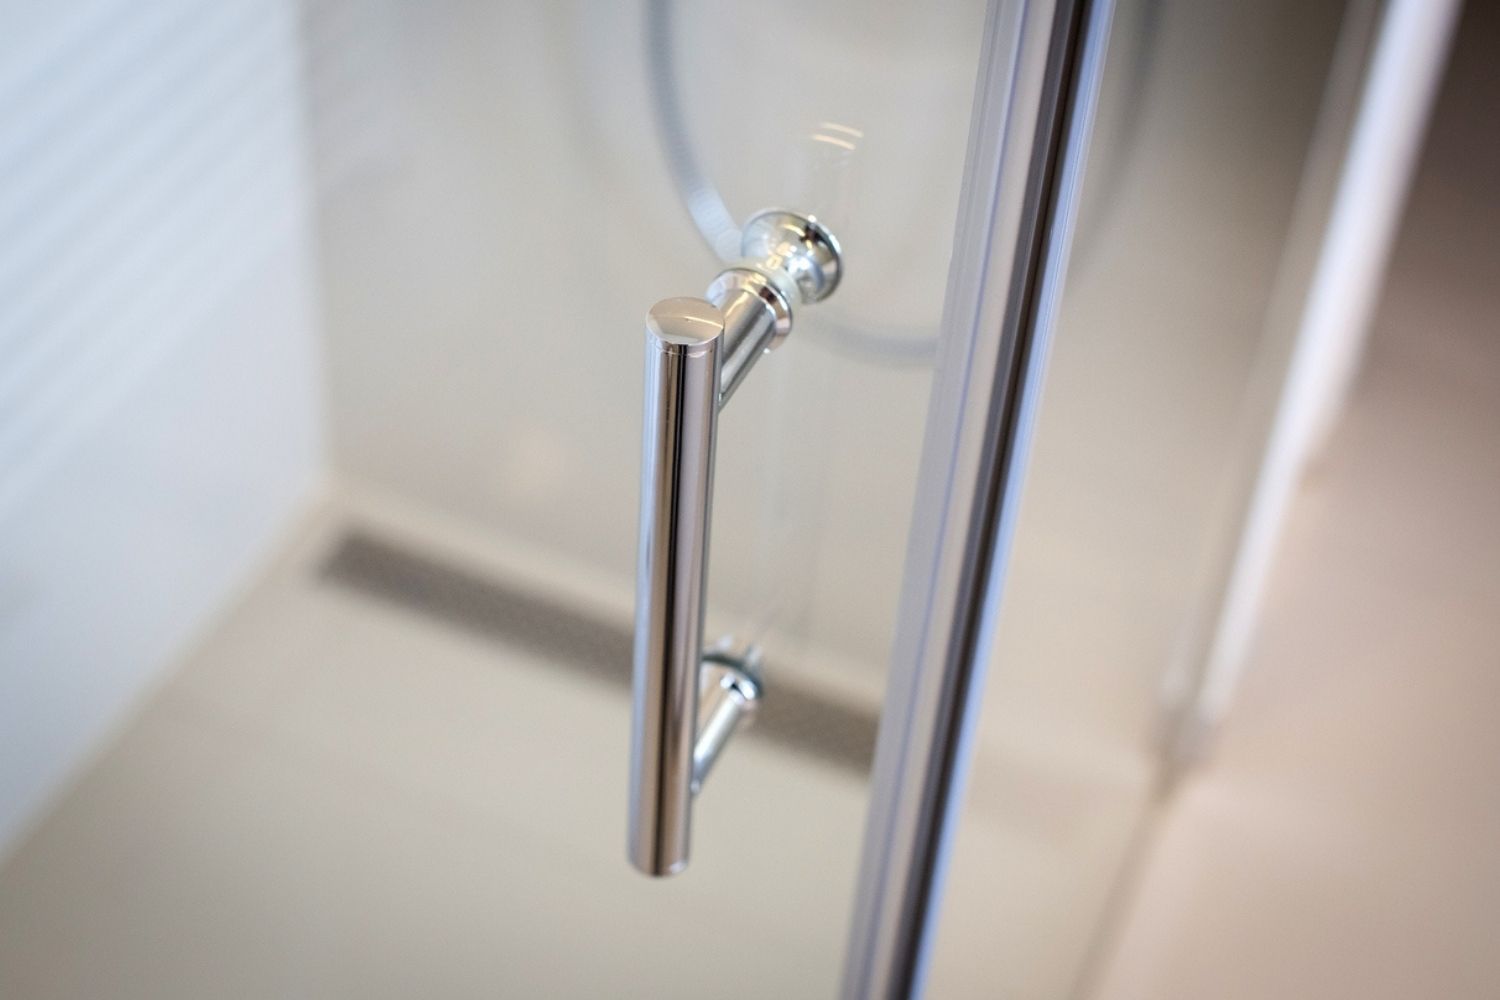 A close-up of the shower door handle on the best shower door option